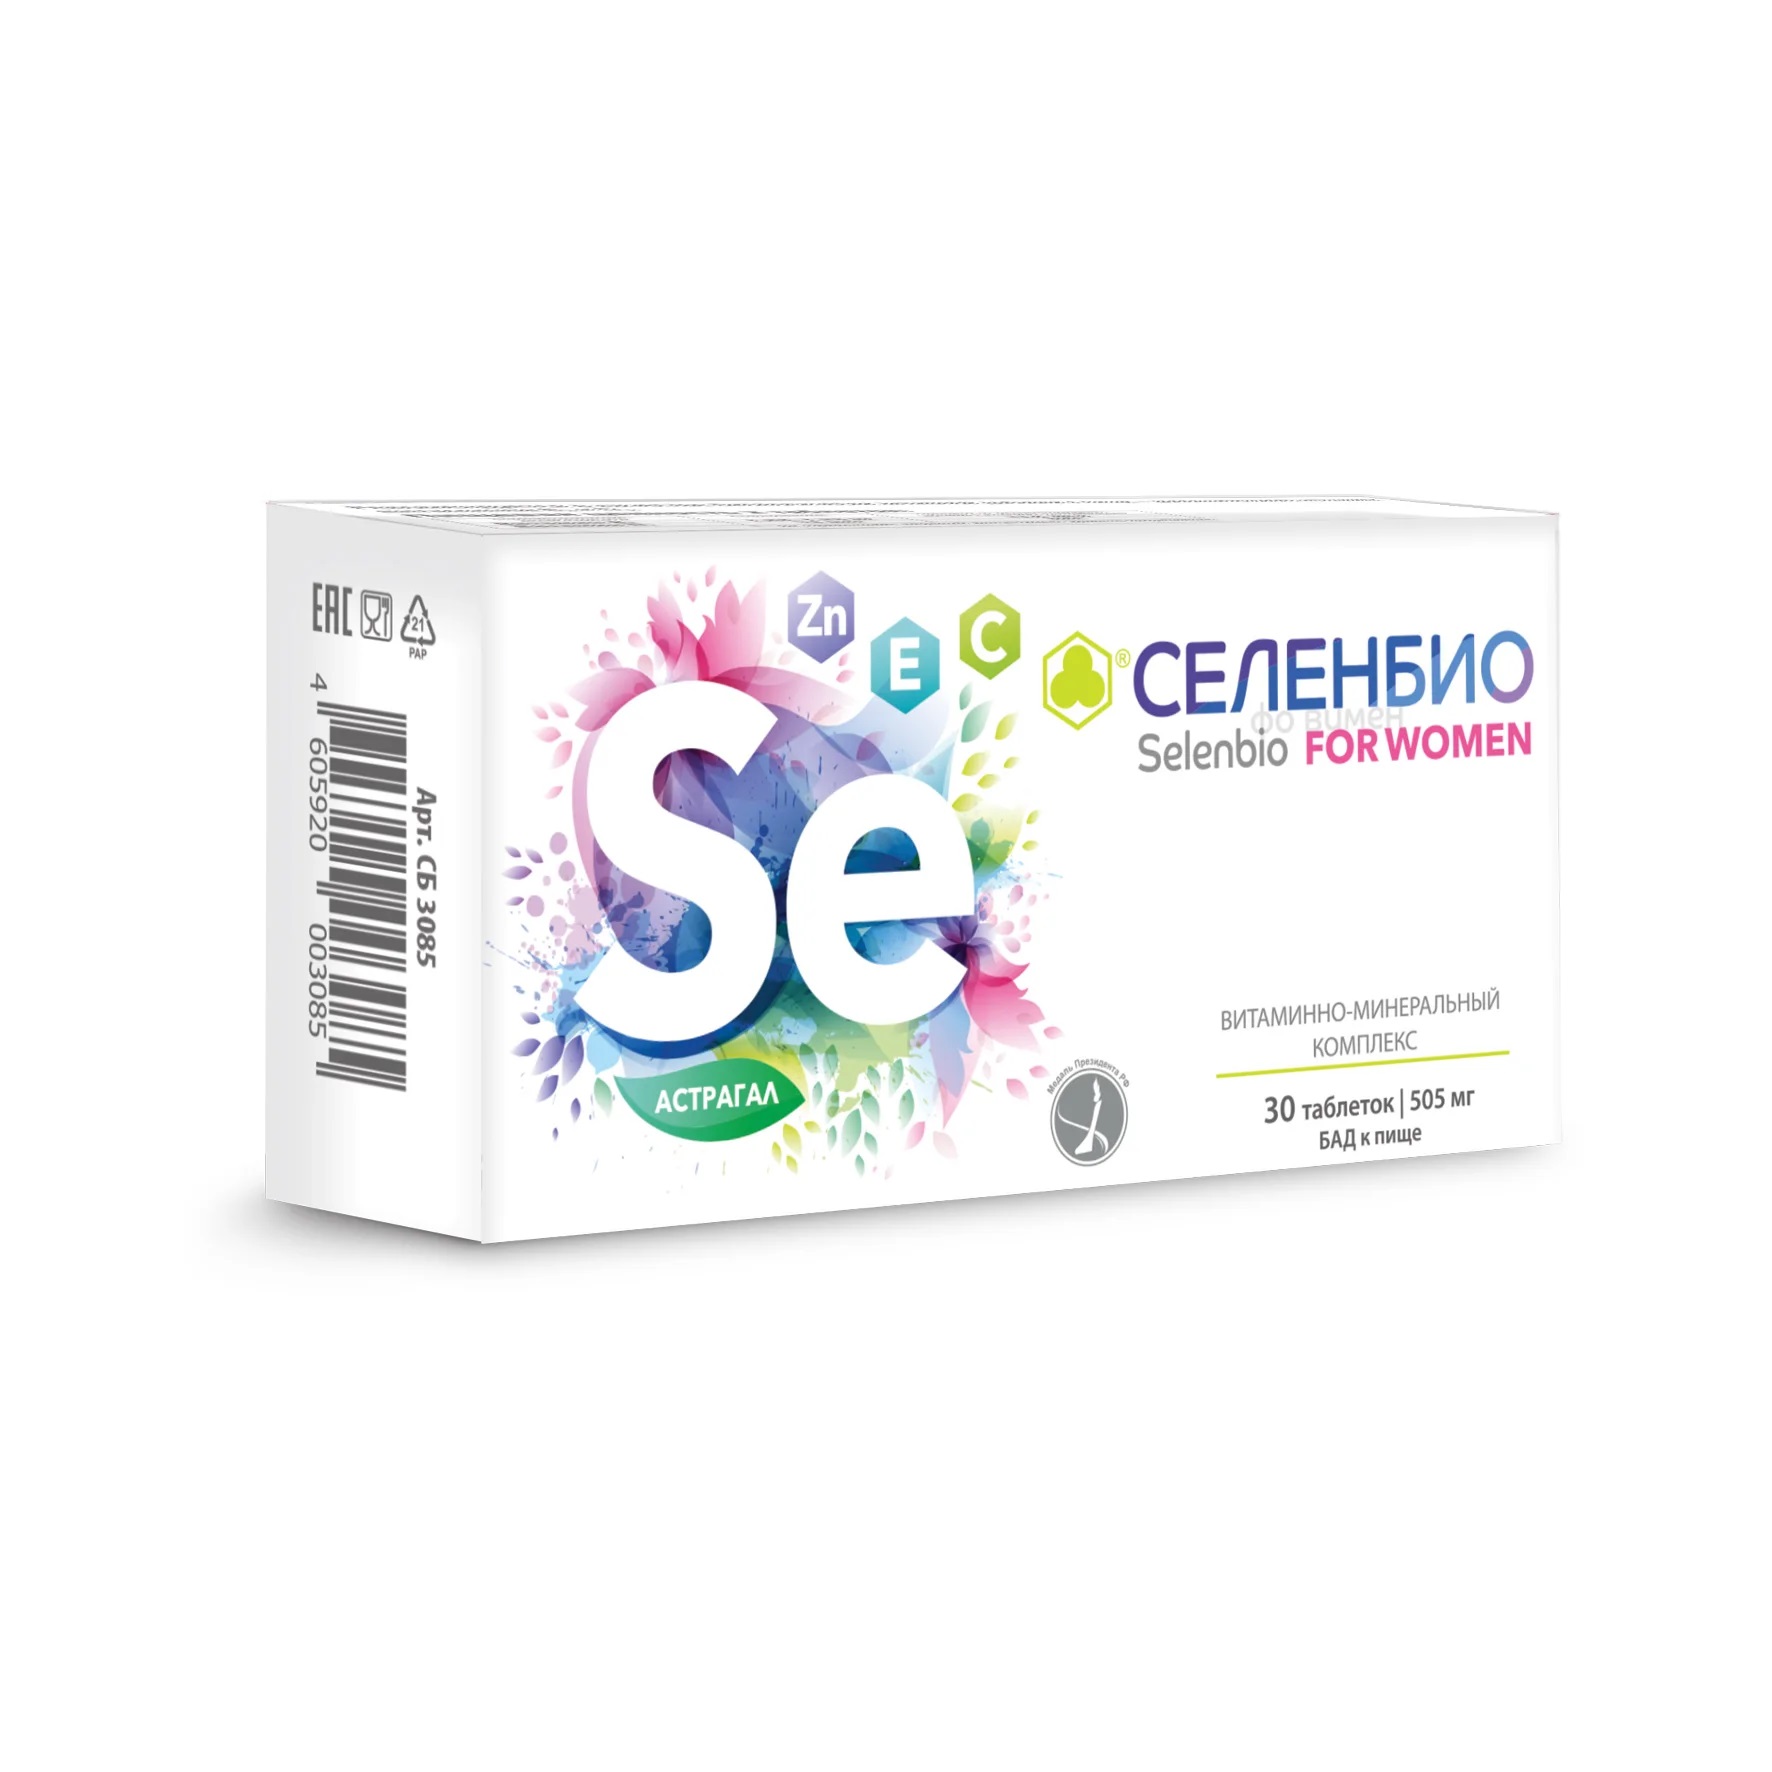 Селенбио for women, таблетки 505 мг, 30 шт. маленькие женщины уровень 3